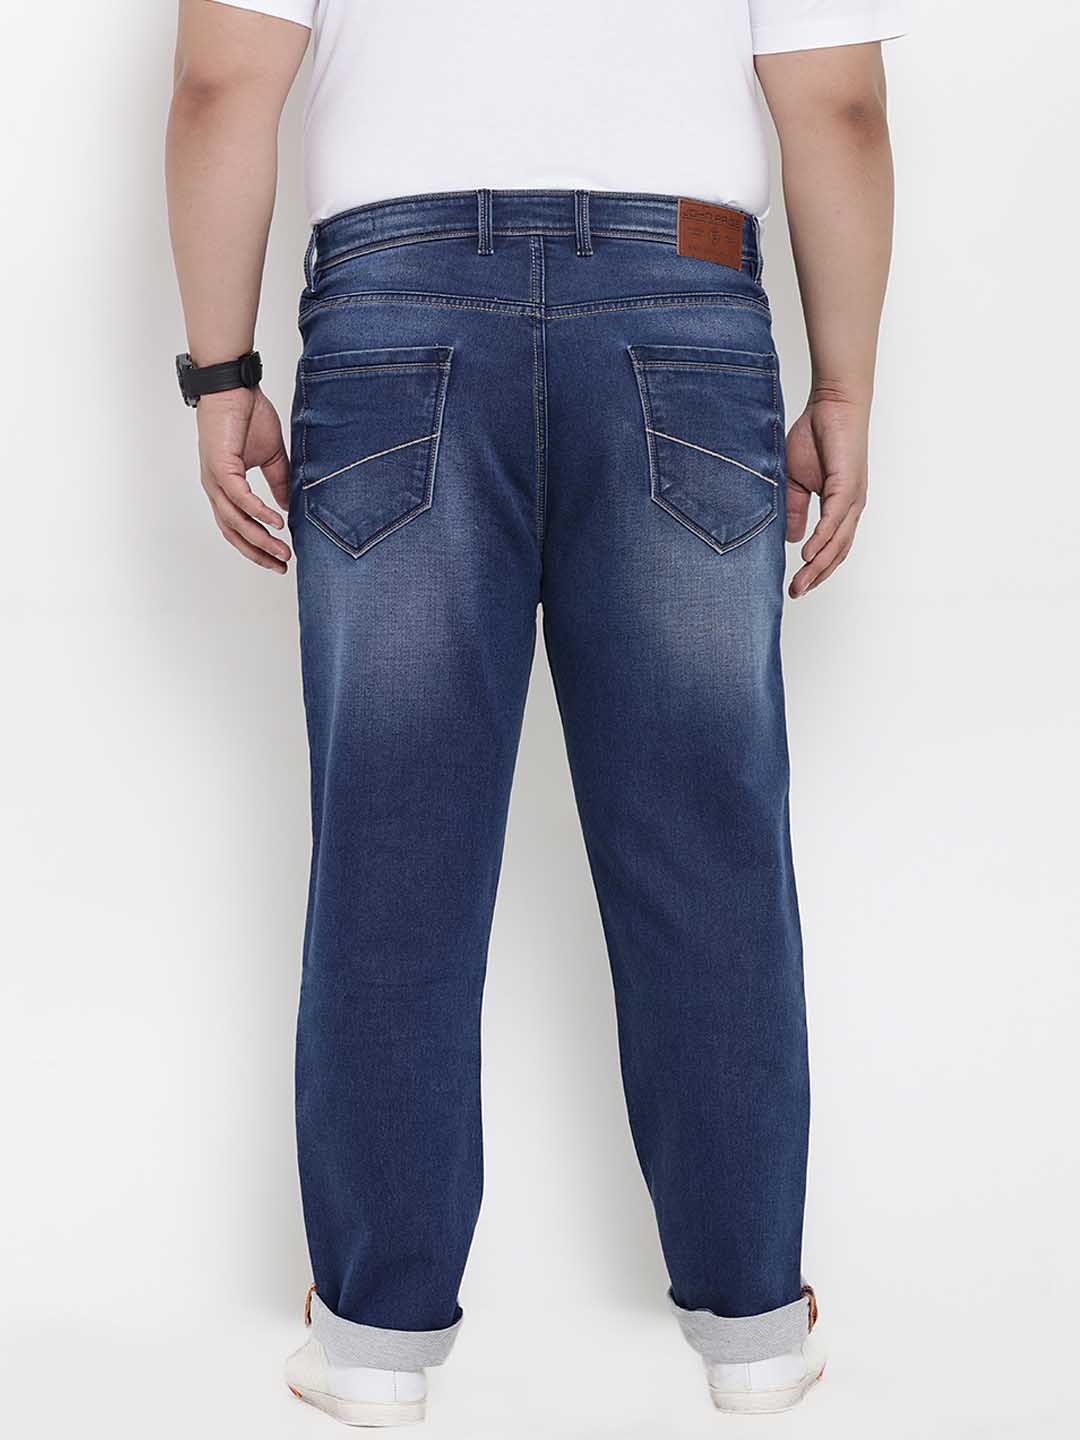 bottomwear/jeans/BEPLJPJ1188/bepljpj1188-5.jpg